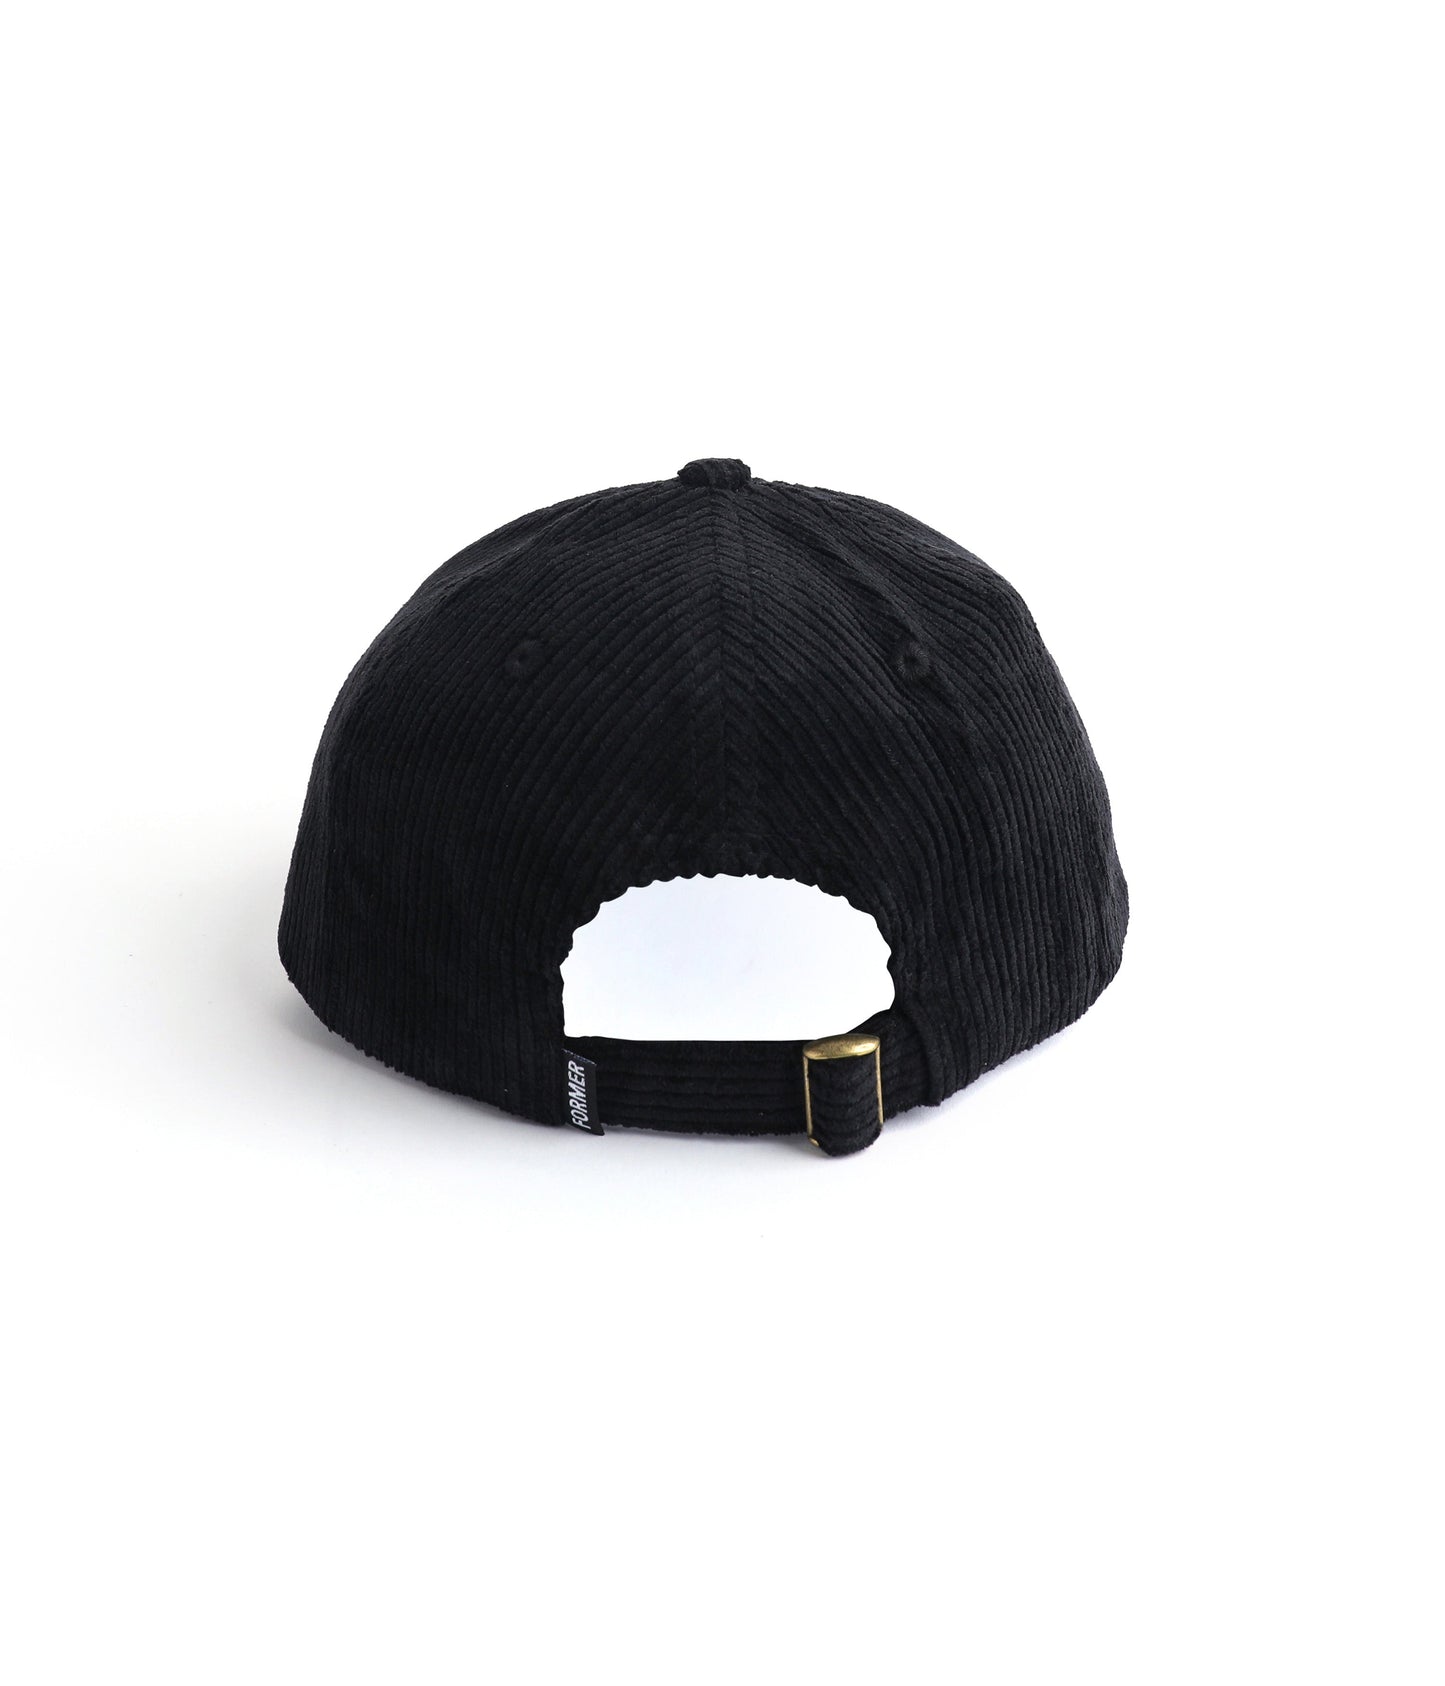 ALL PURPOSE CAP // BLACK